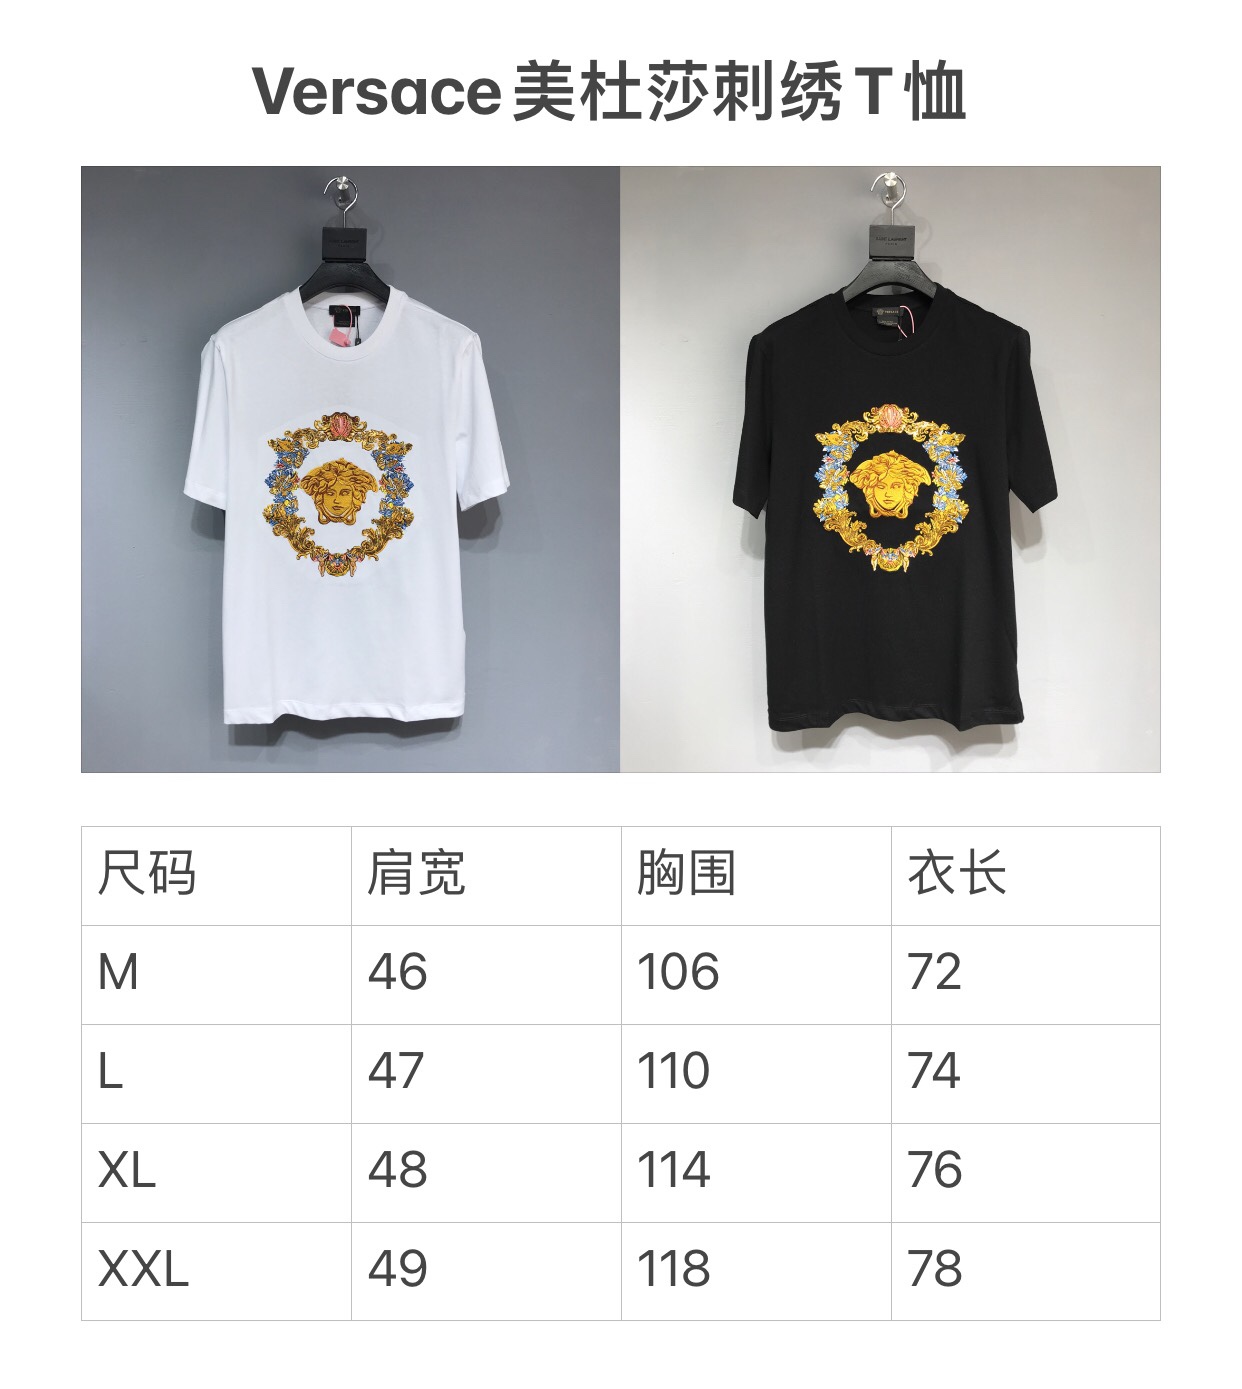 Versace 2021ss T-shirt